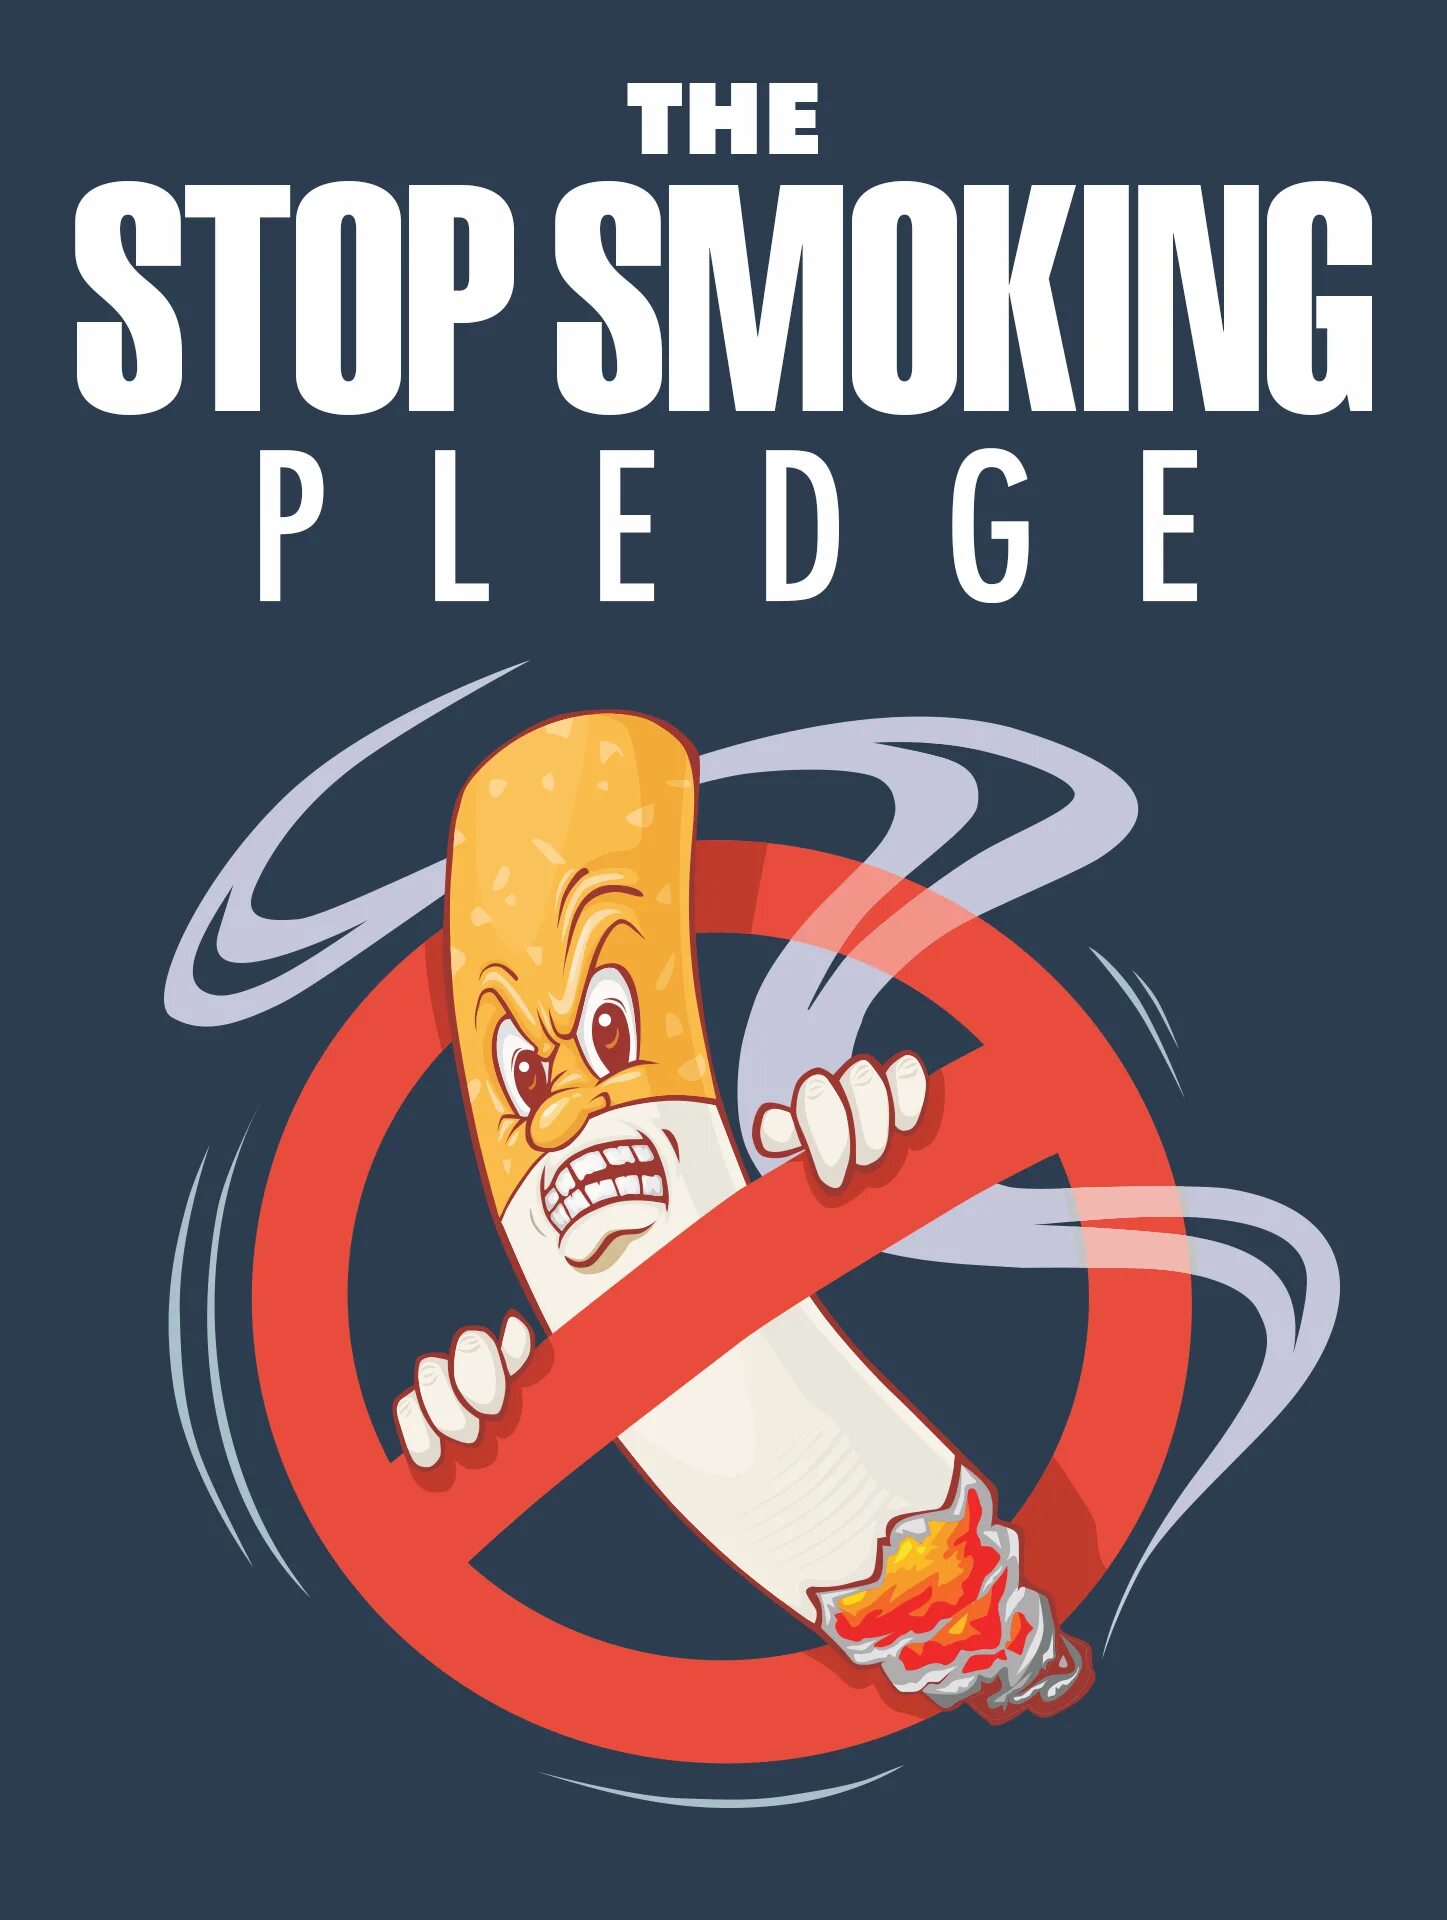 Stopped to smoke stopped smoking. Стоп смокинг. Курение stop. "Stop smoking!" Плакаты.